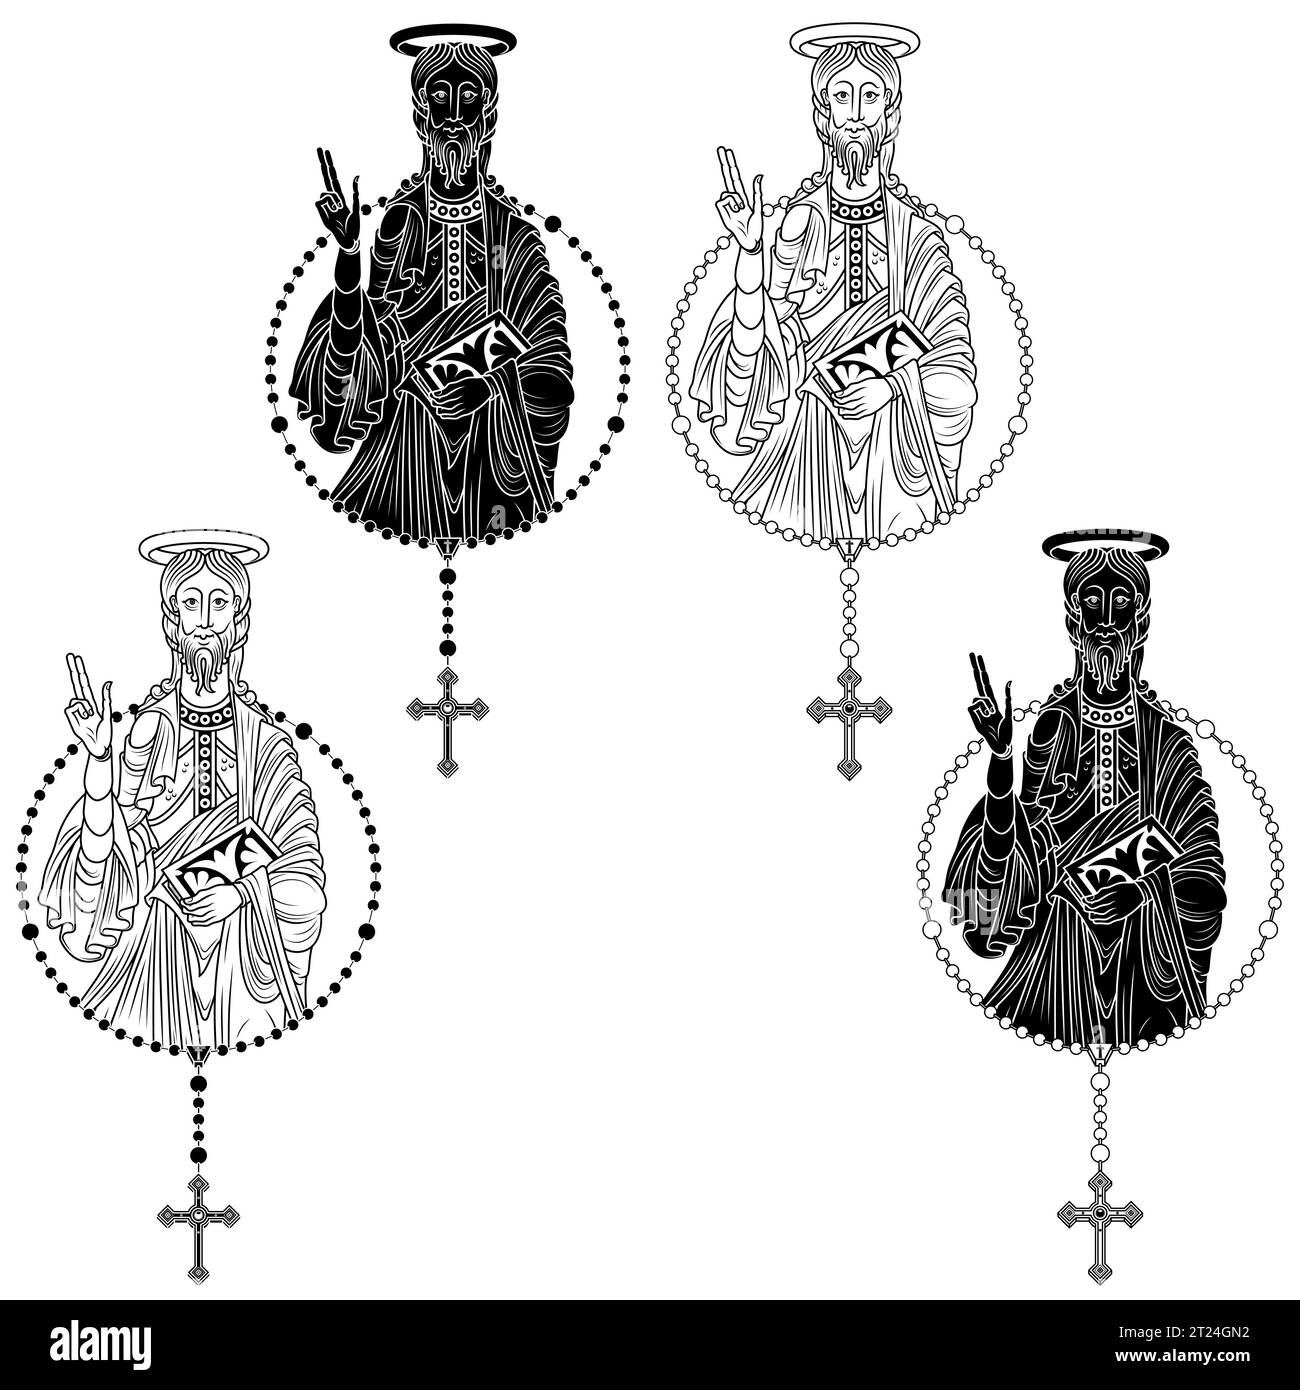 Conception vectorielle de l'Apôtre avec rosaire catholique, art chrétien du moyen âge Illustration de Vecteur